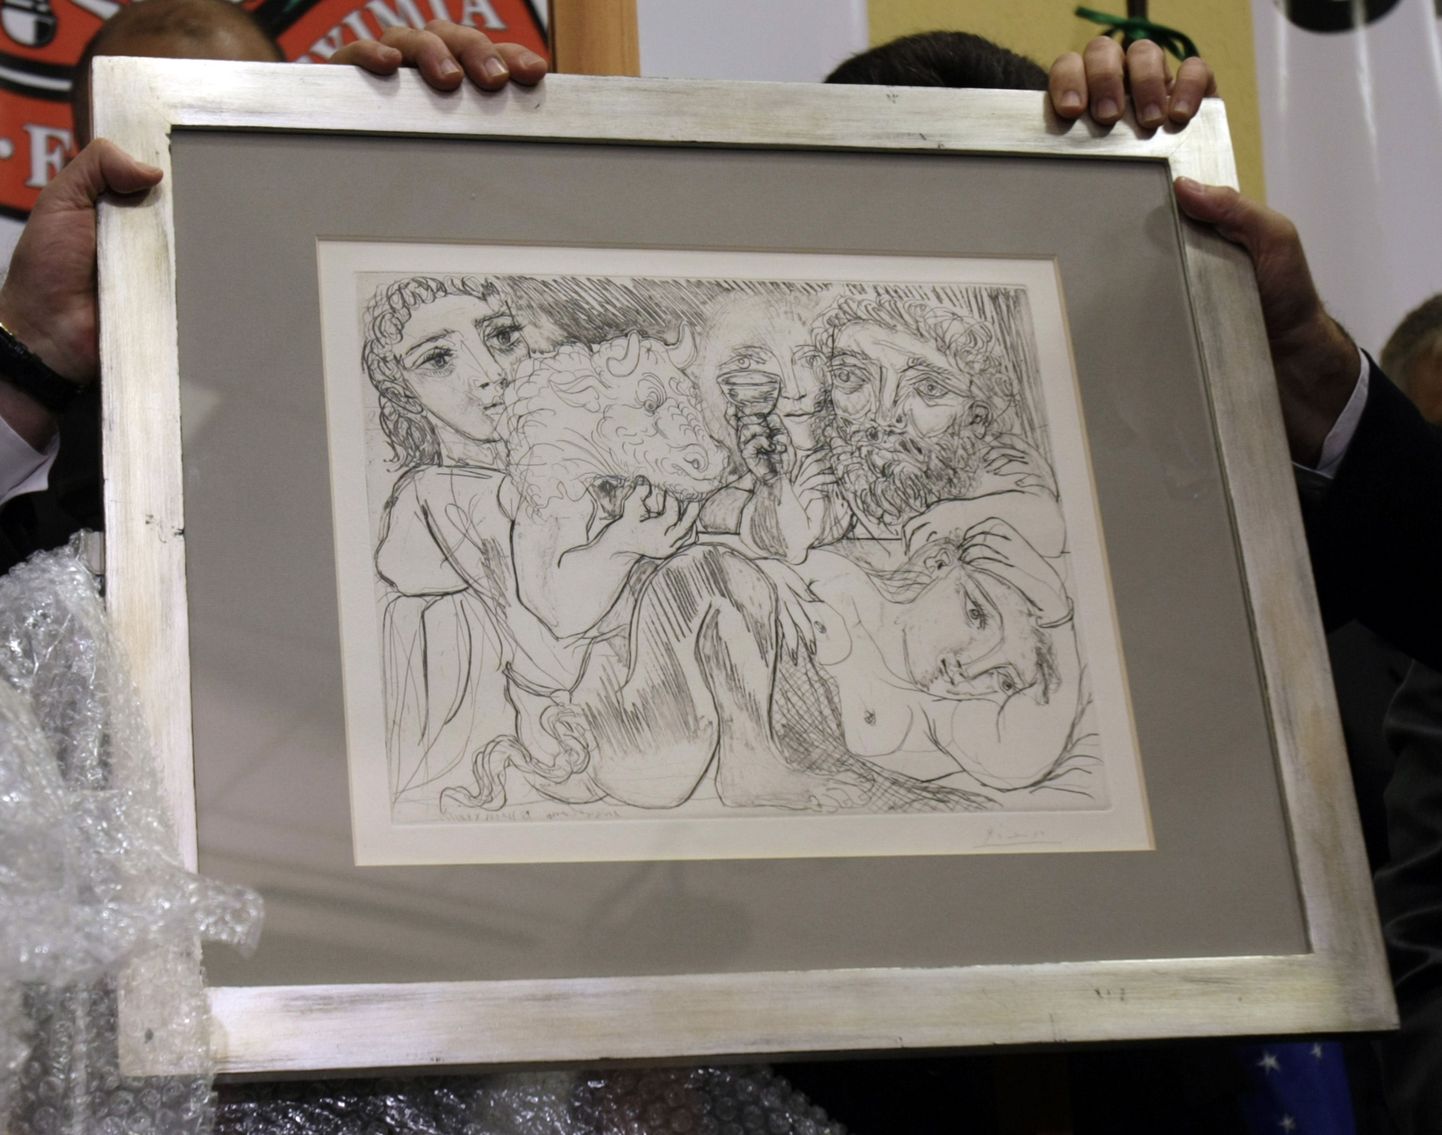 Politsei näitab Pablo Picasso tööd «Minotaurus, jodik ja naised», mis juunis muuseumist ära varastati ja augustis üles leiti.